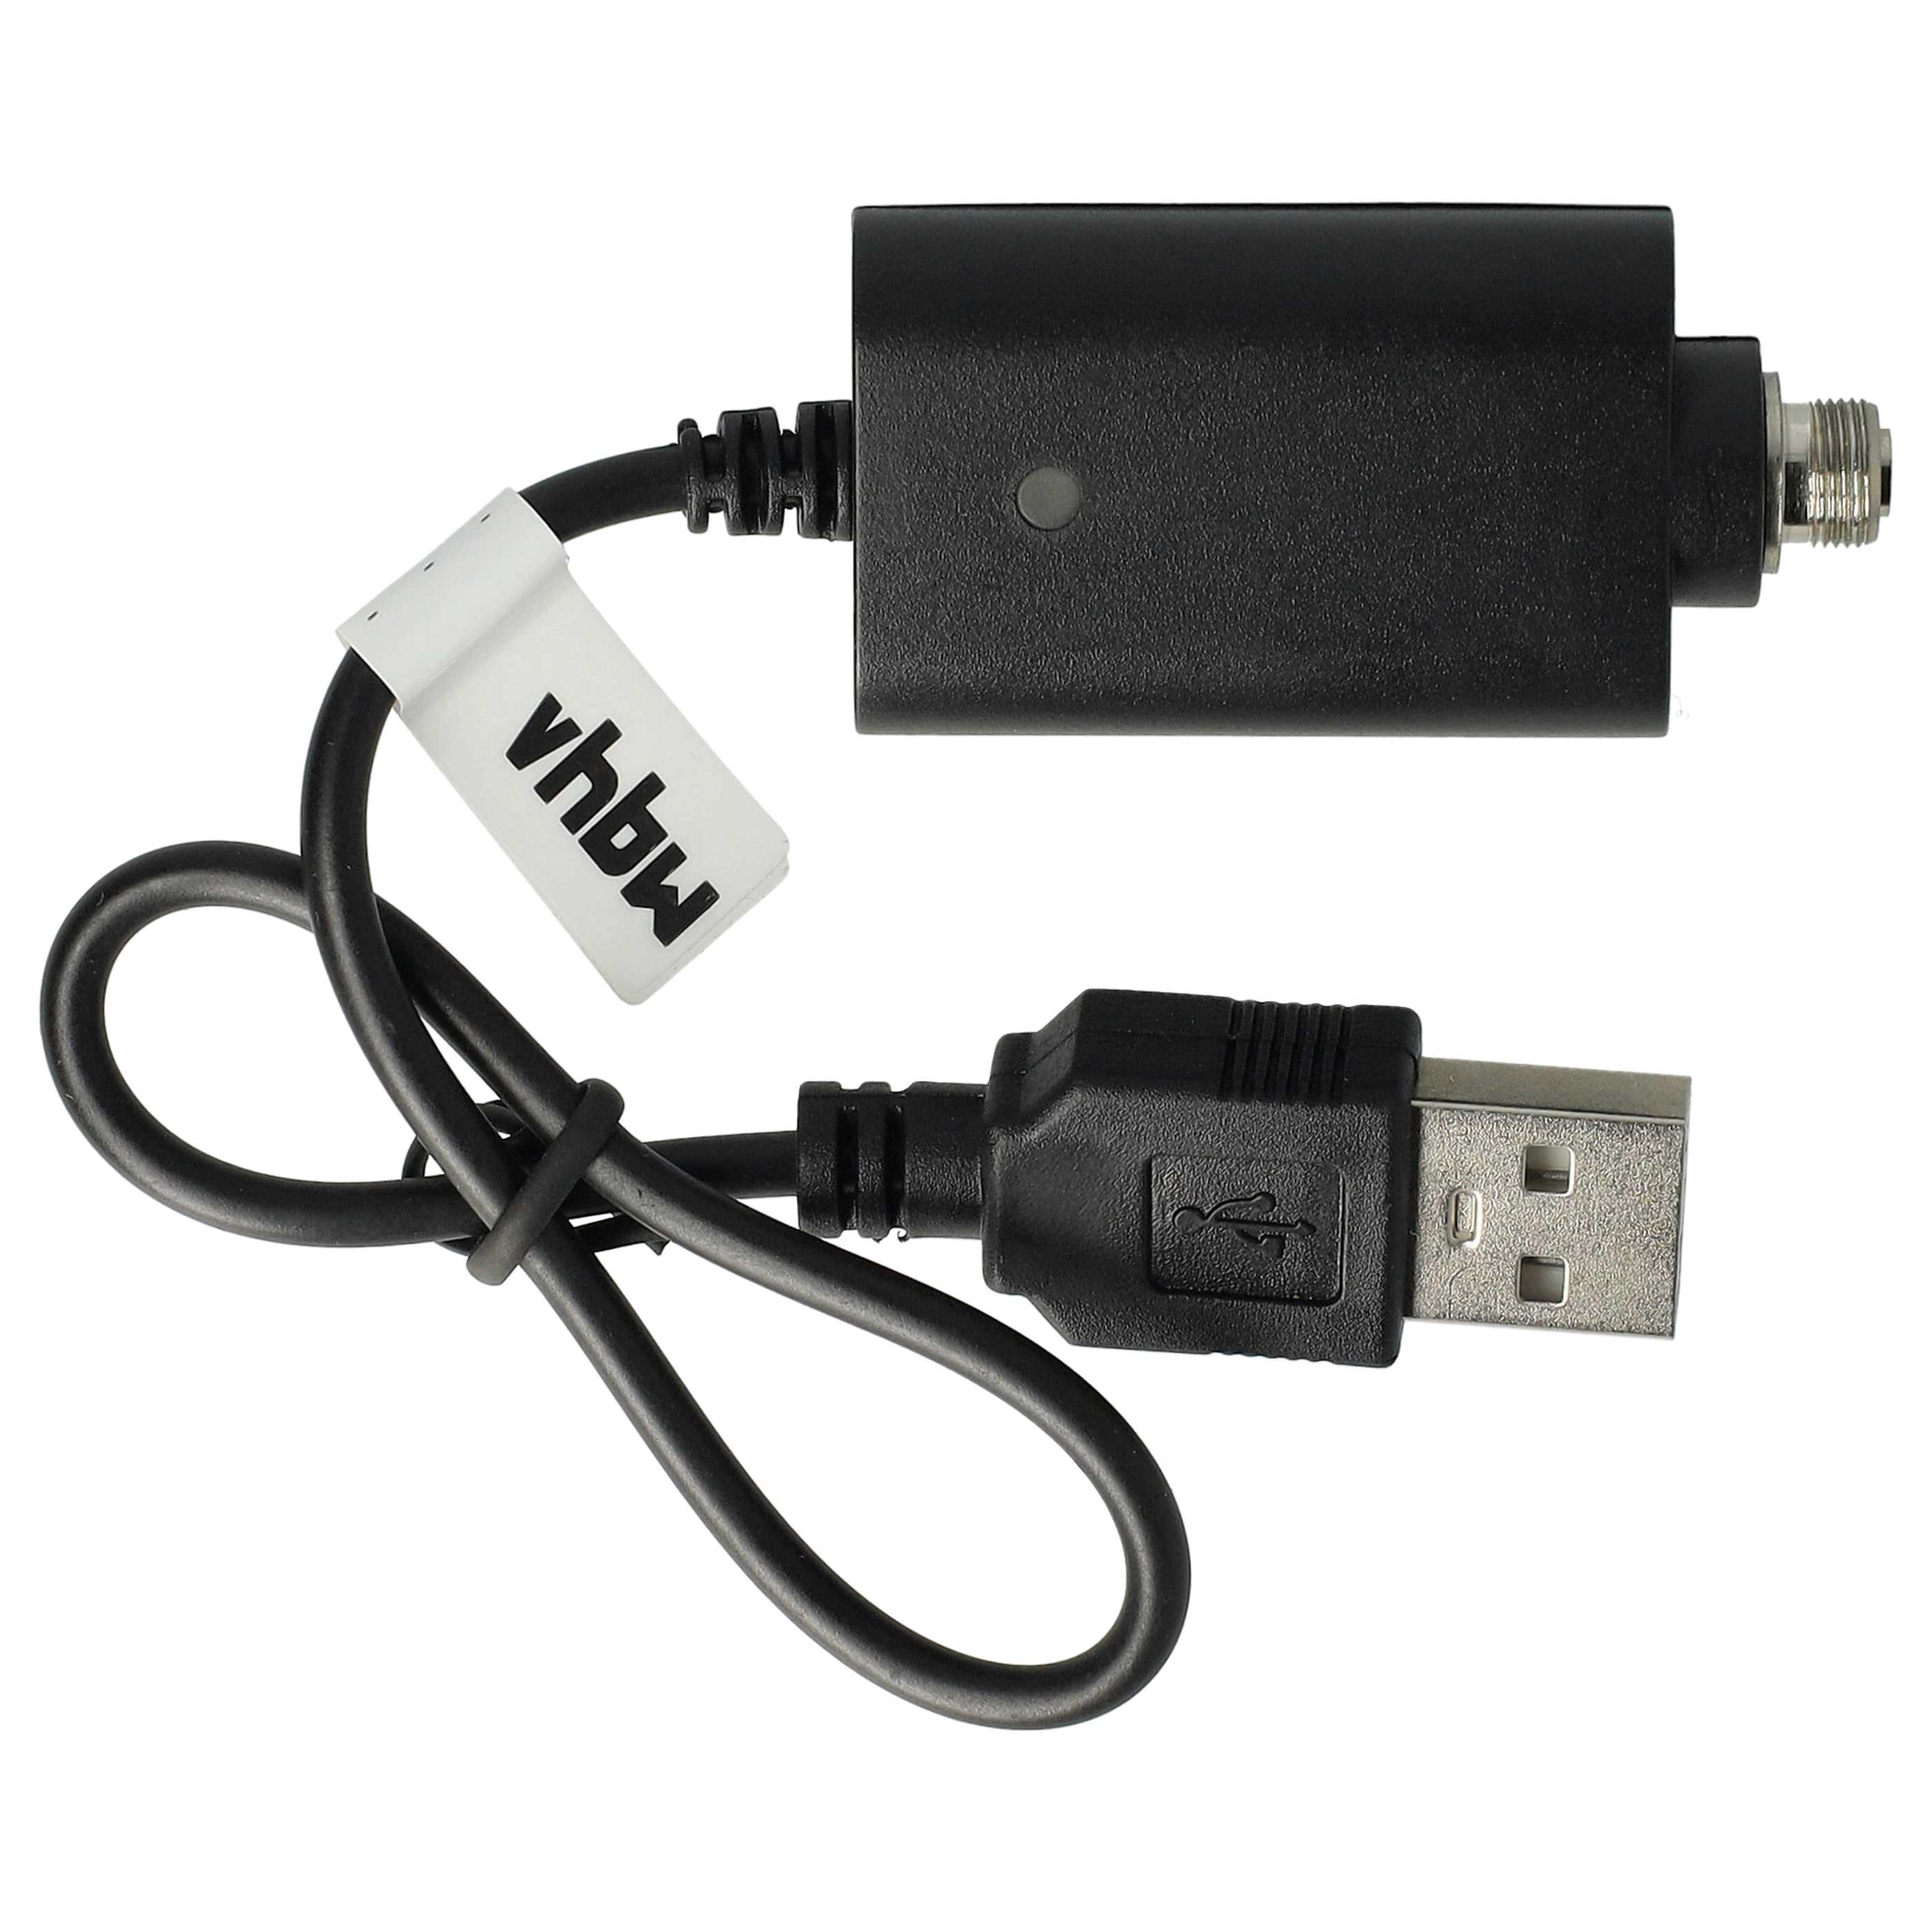 vhbw USB Ladegerät kompatibel mit diversen E-Zigaretten, E-Shisha Geräten mit Schraubverschluss - 25cm Ladekab